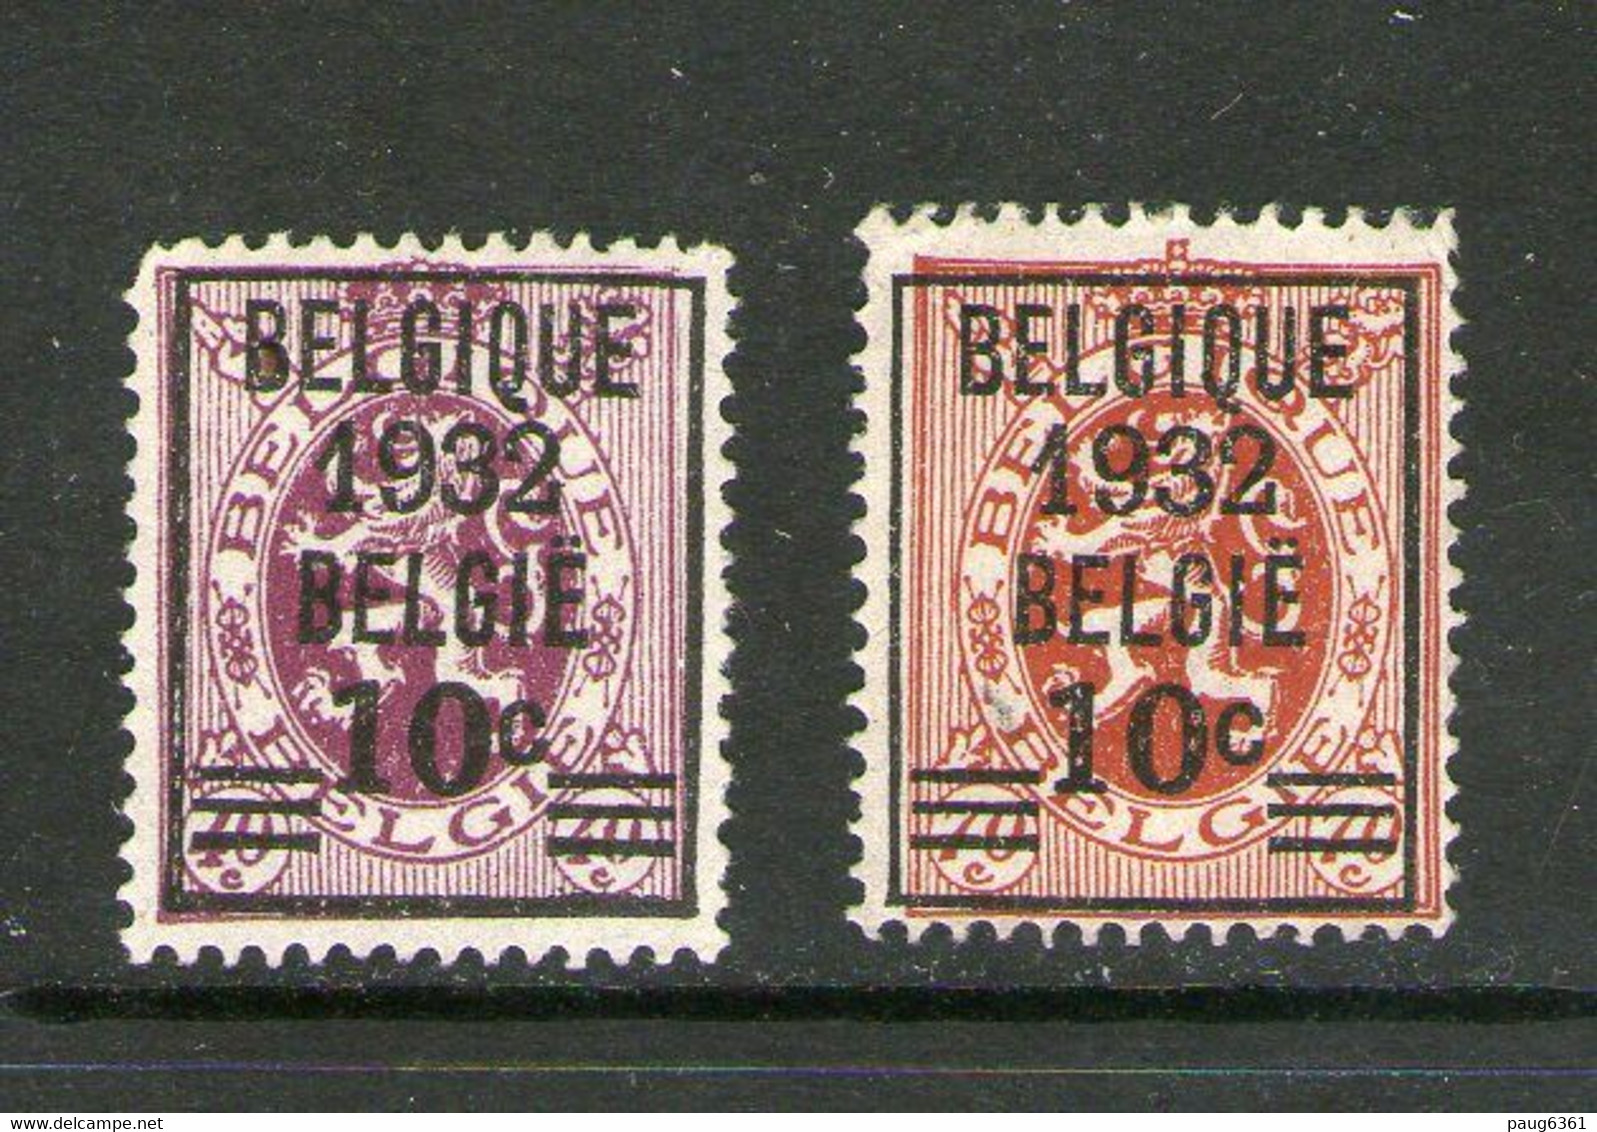 BELGIQUE 1932 YVERT N°333/34 NEUF MH* - Typo Precancels 1929-37 (Heraldic Lion)